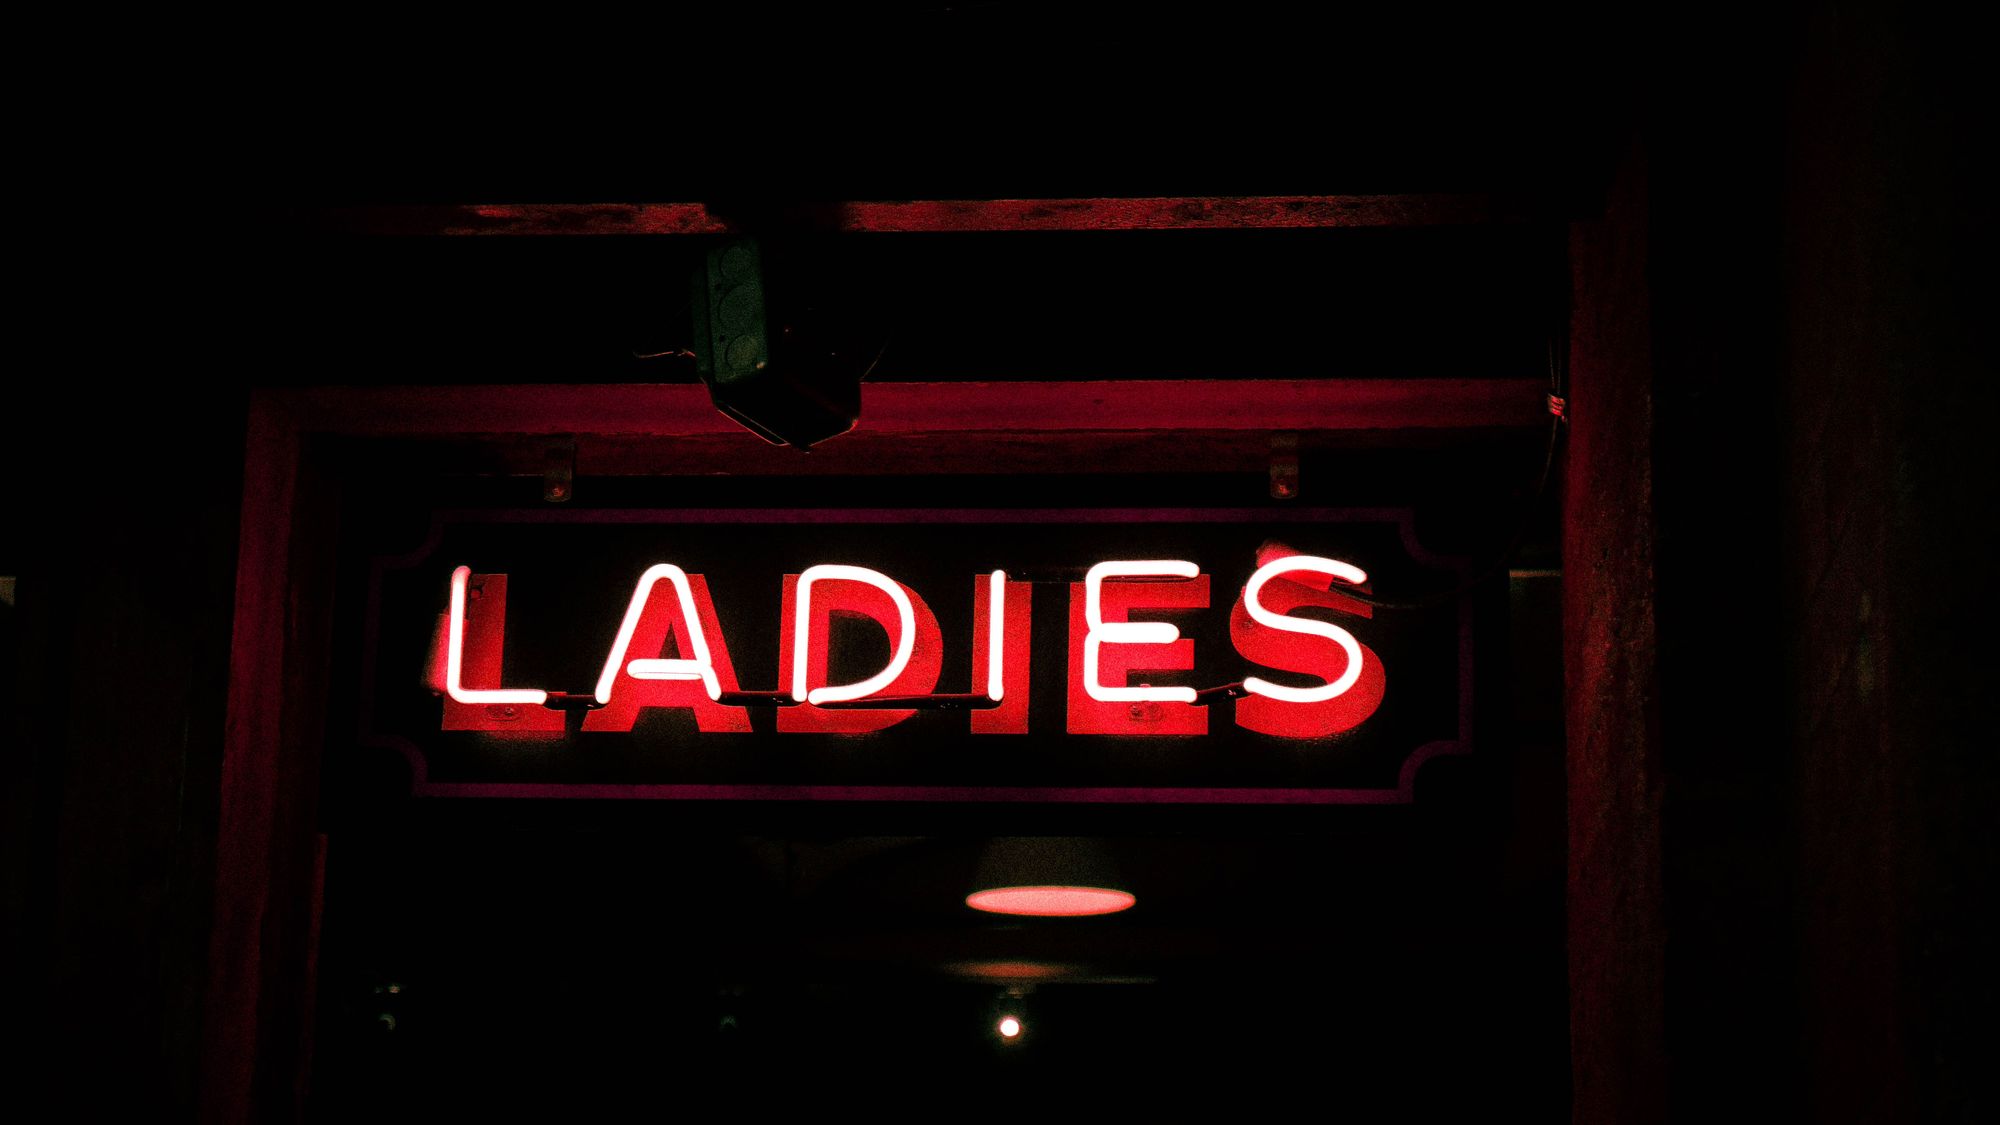 Lampa där det står "Ladies"